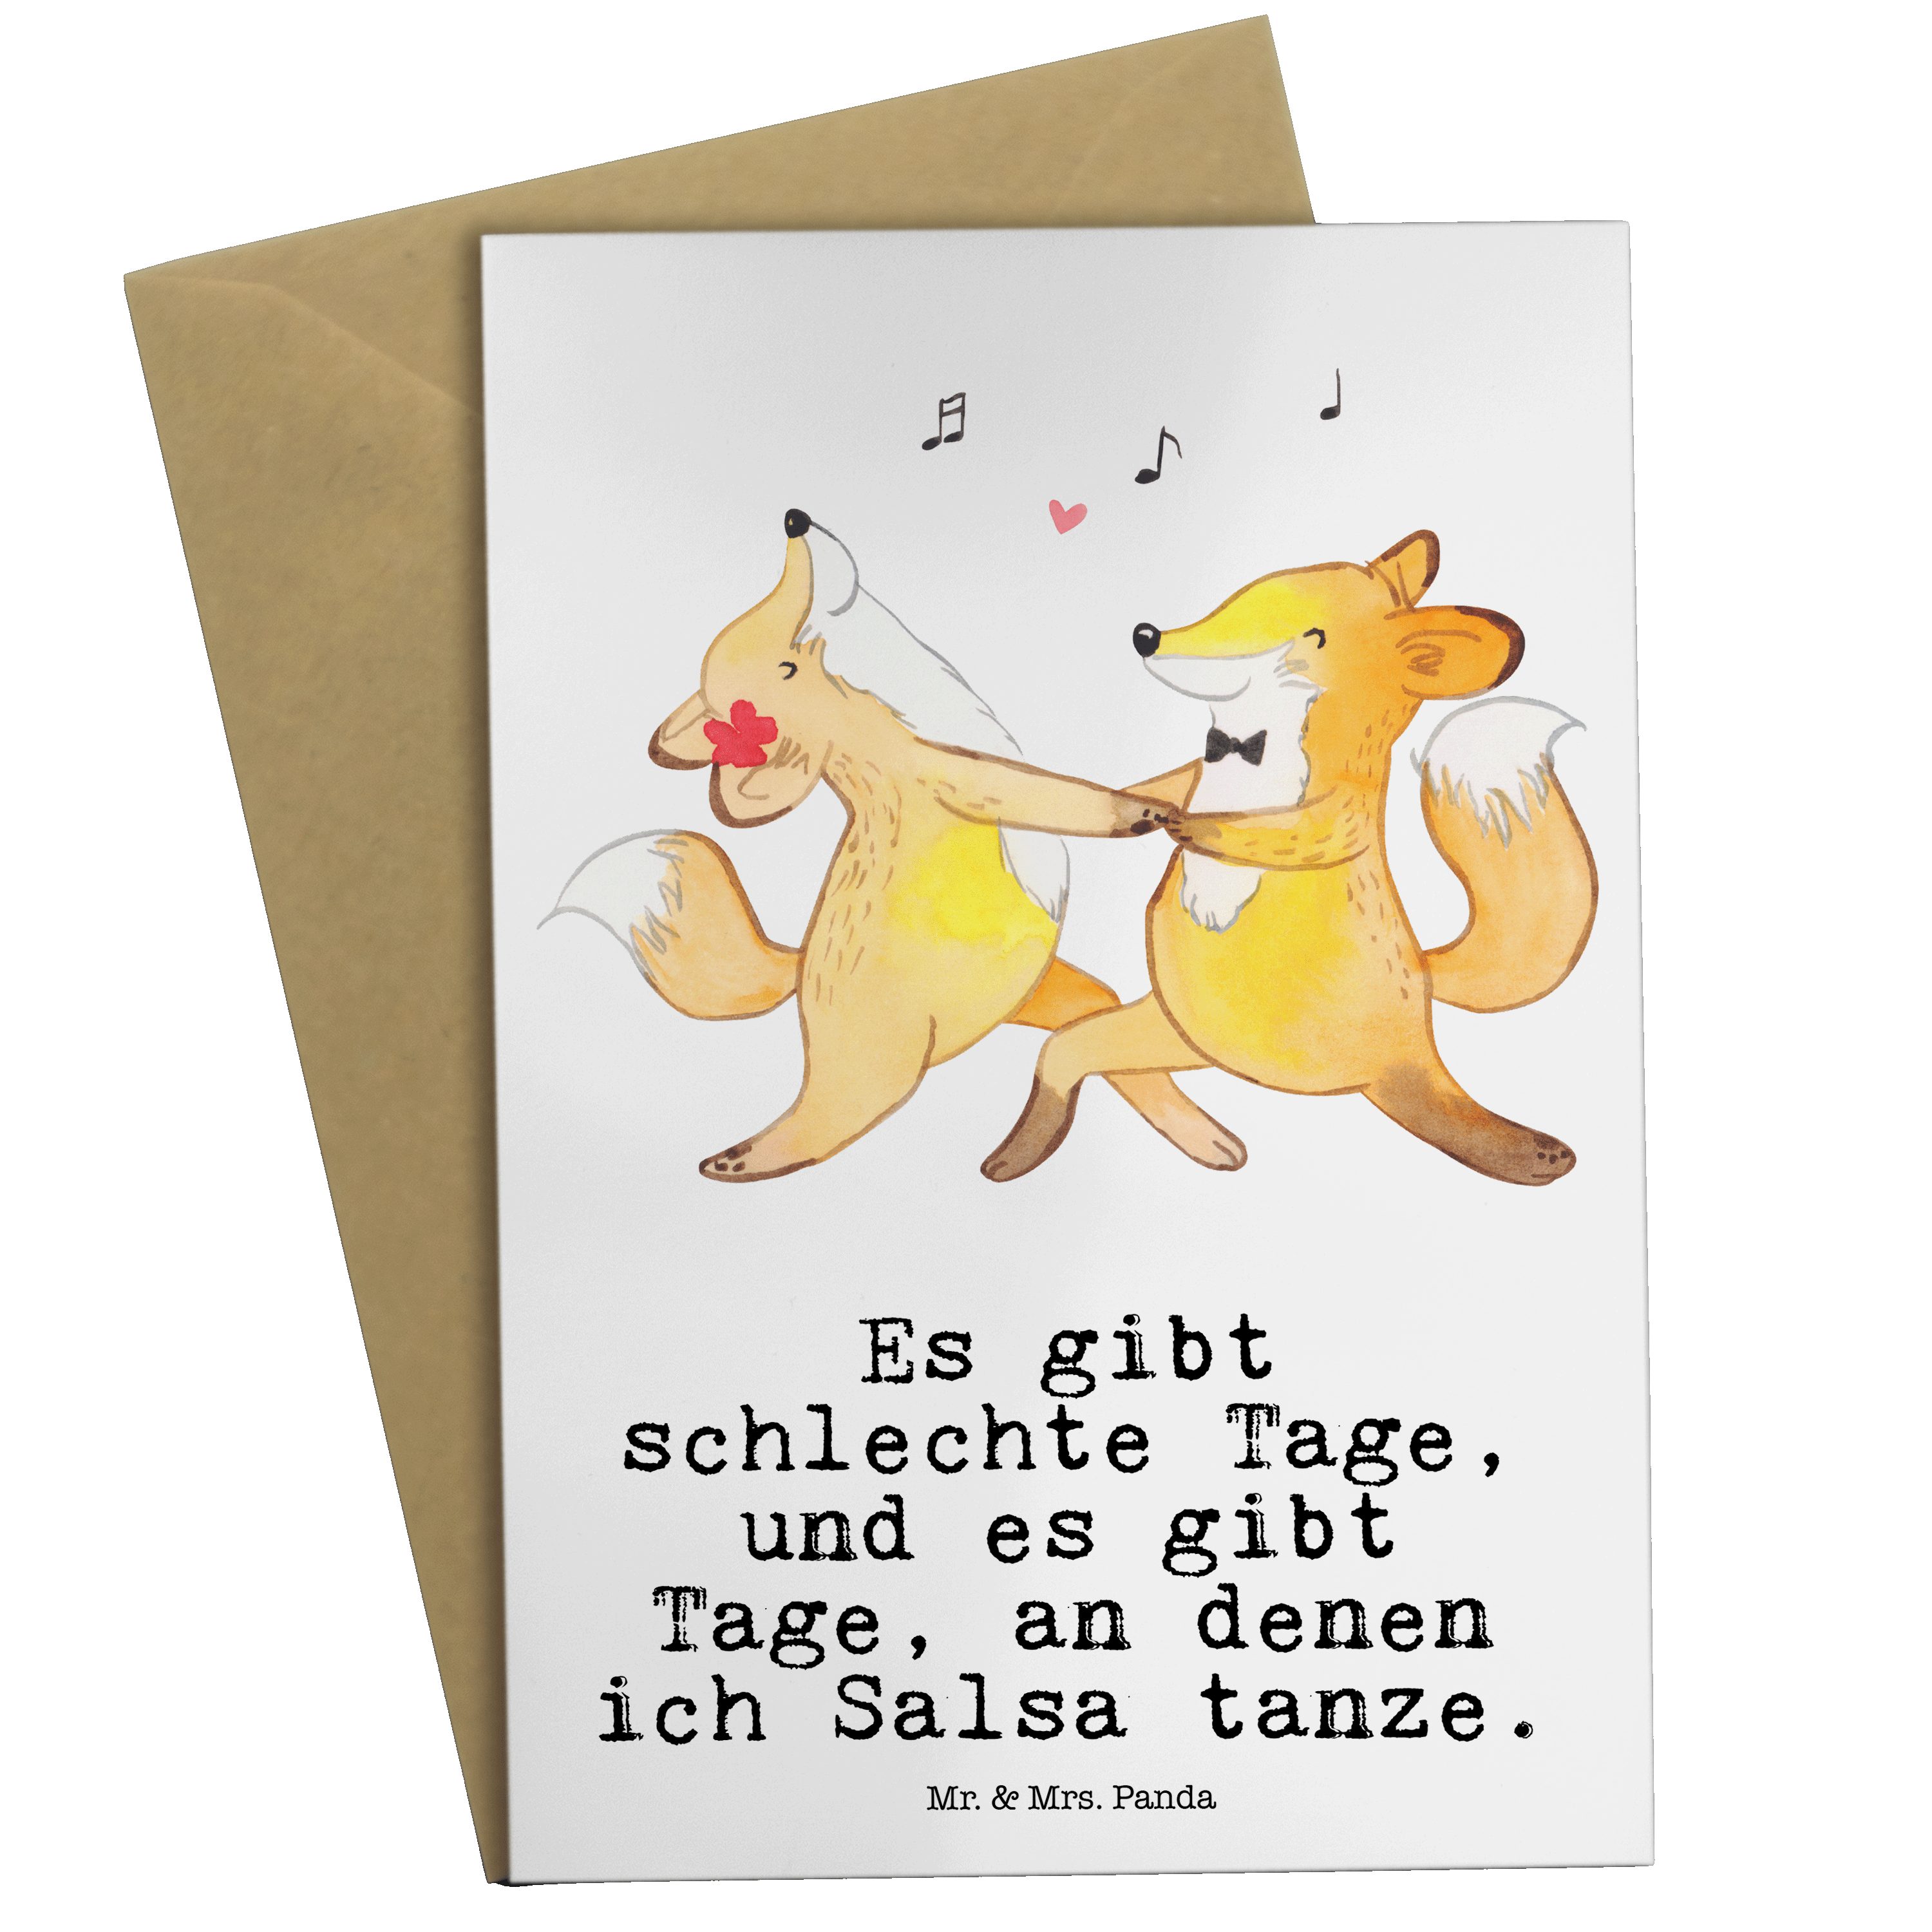 Mr. & Mrs. Panda Grußkarte Füchse Salsa tanzen Tage - Weiß - Geschenk, Geburtstagskarte, Auszeic